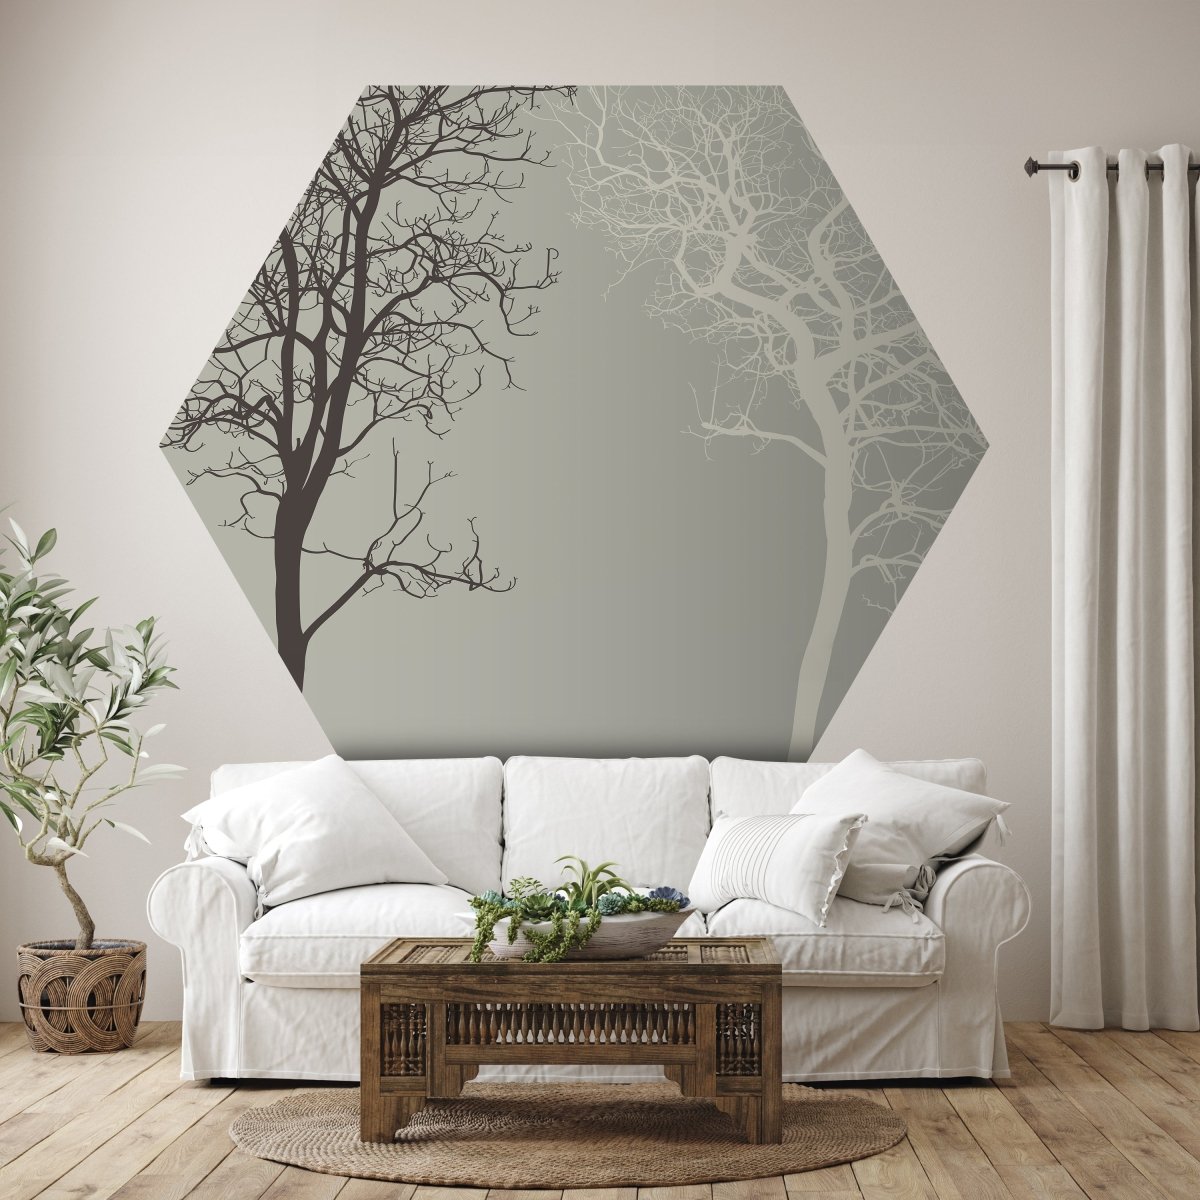 Hexagon-Fototapete Silhouetten von Bäumen M0015 - Bild 1